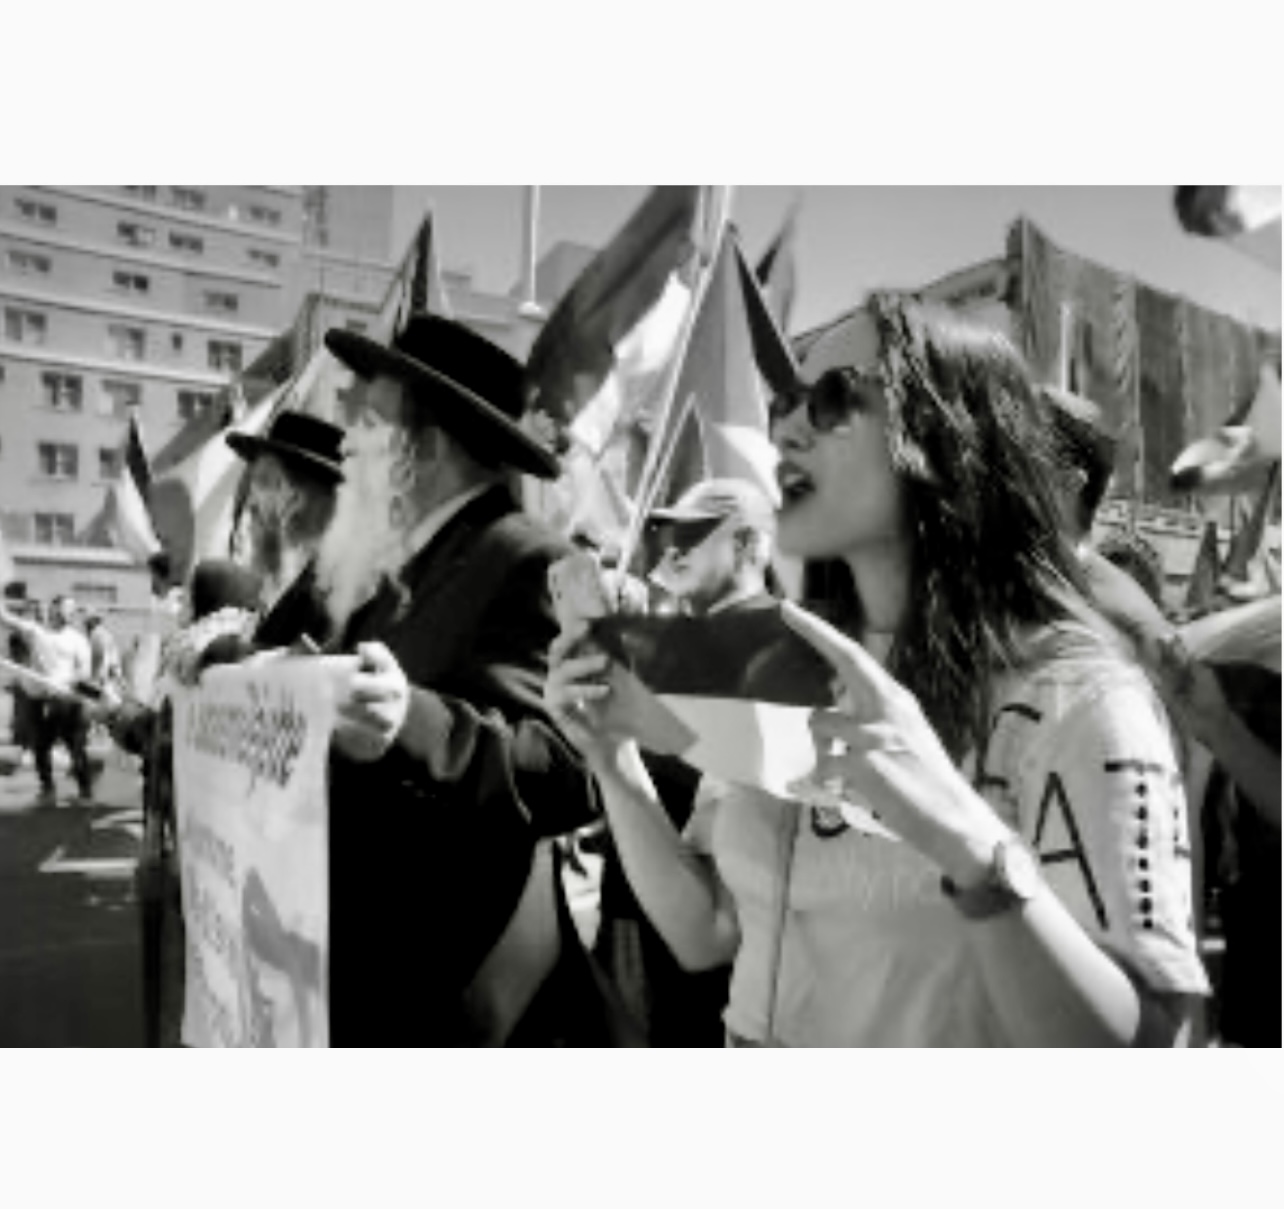 Un groupe de personnes brandissant des pancartes lors d’une Marche pro-palestinienne, capturé sur une photo en noir et blanc.